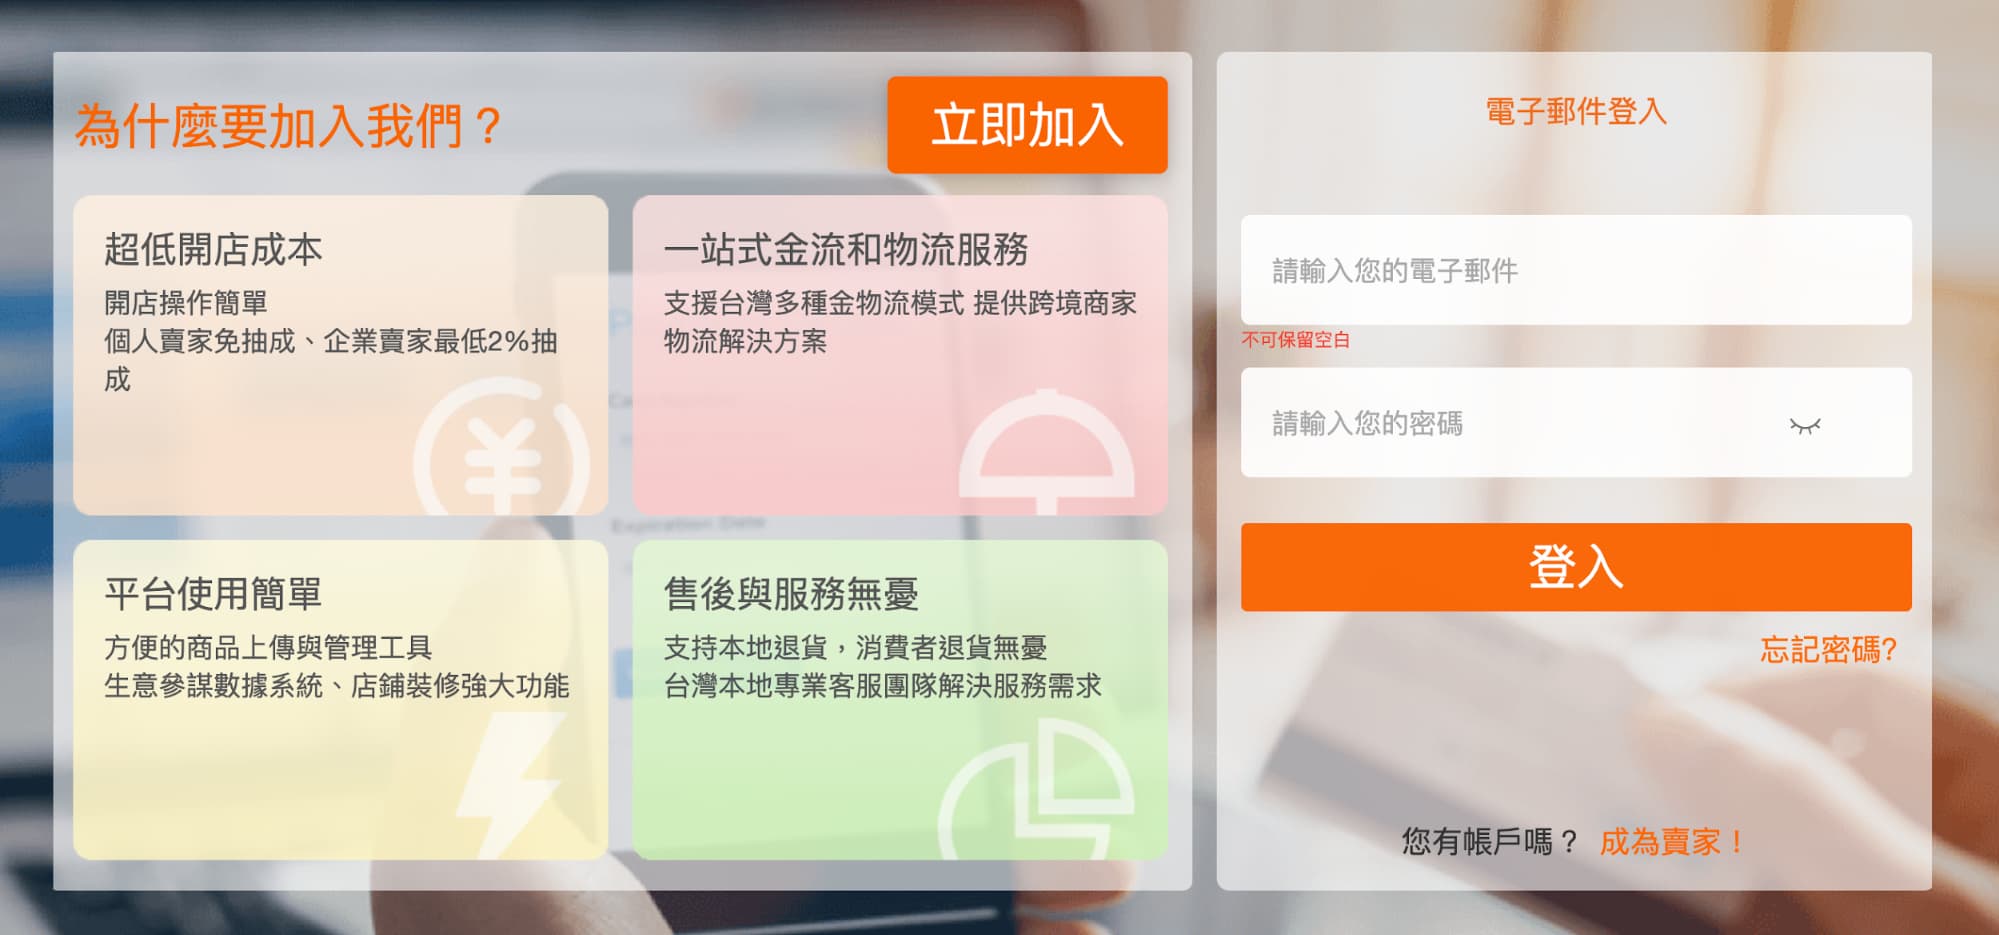 如何註冊或申請台灣淘寶賣家6